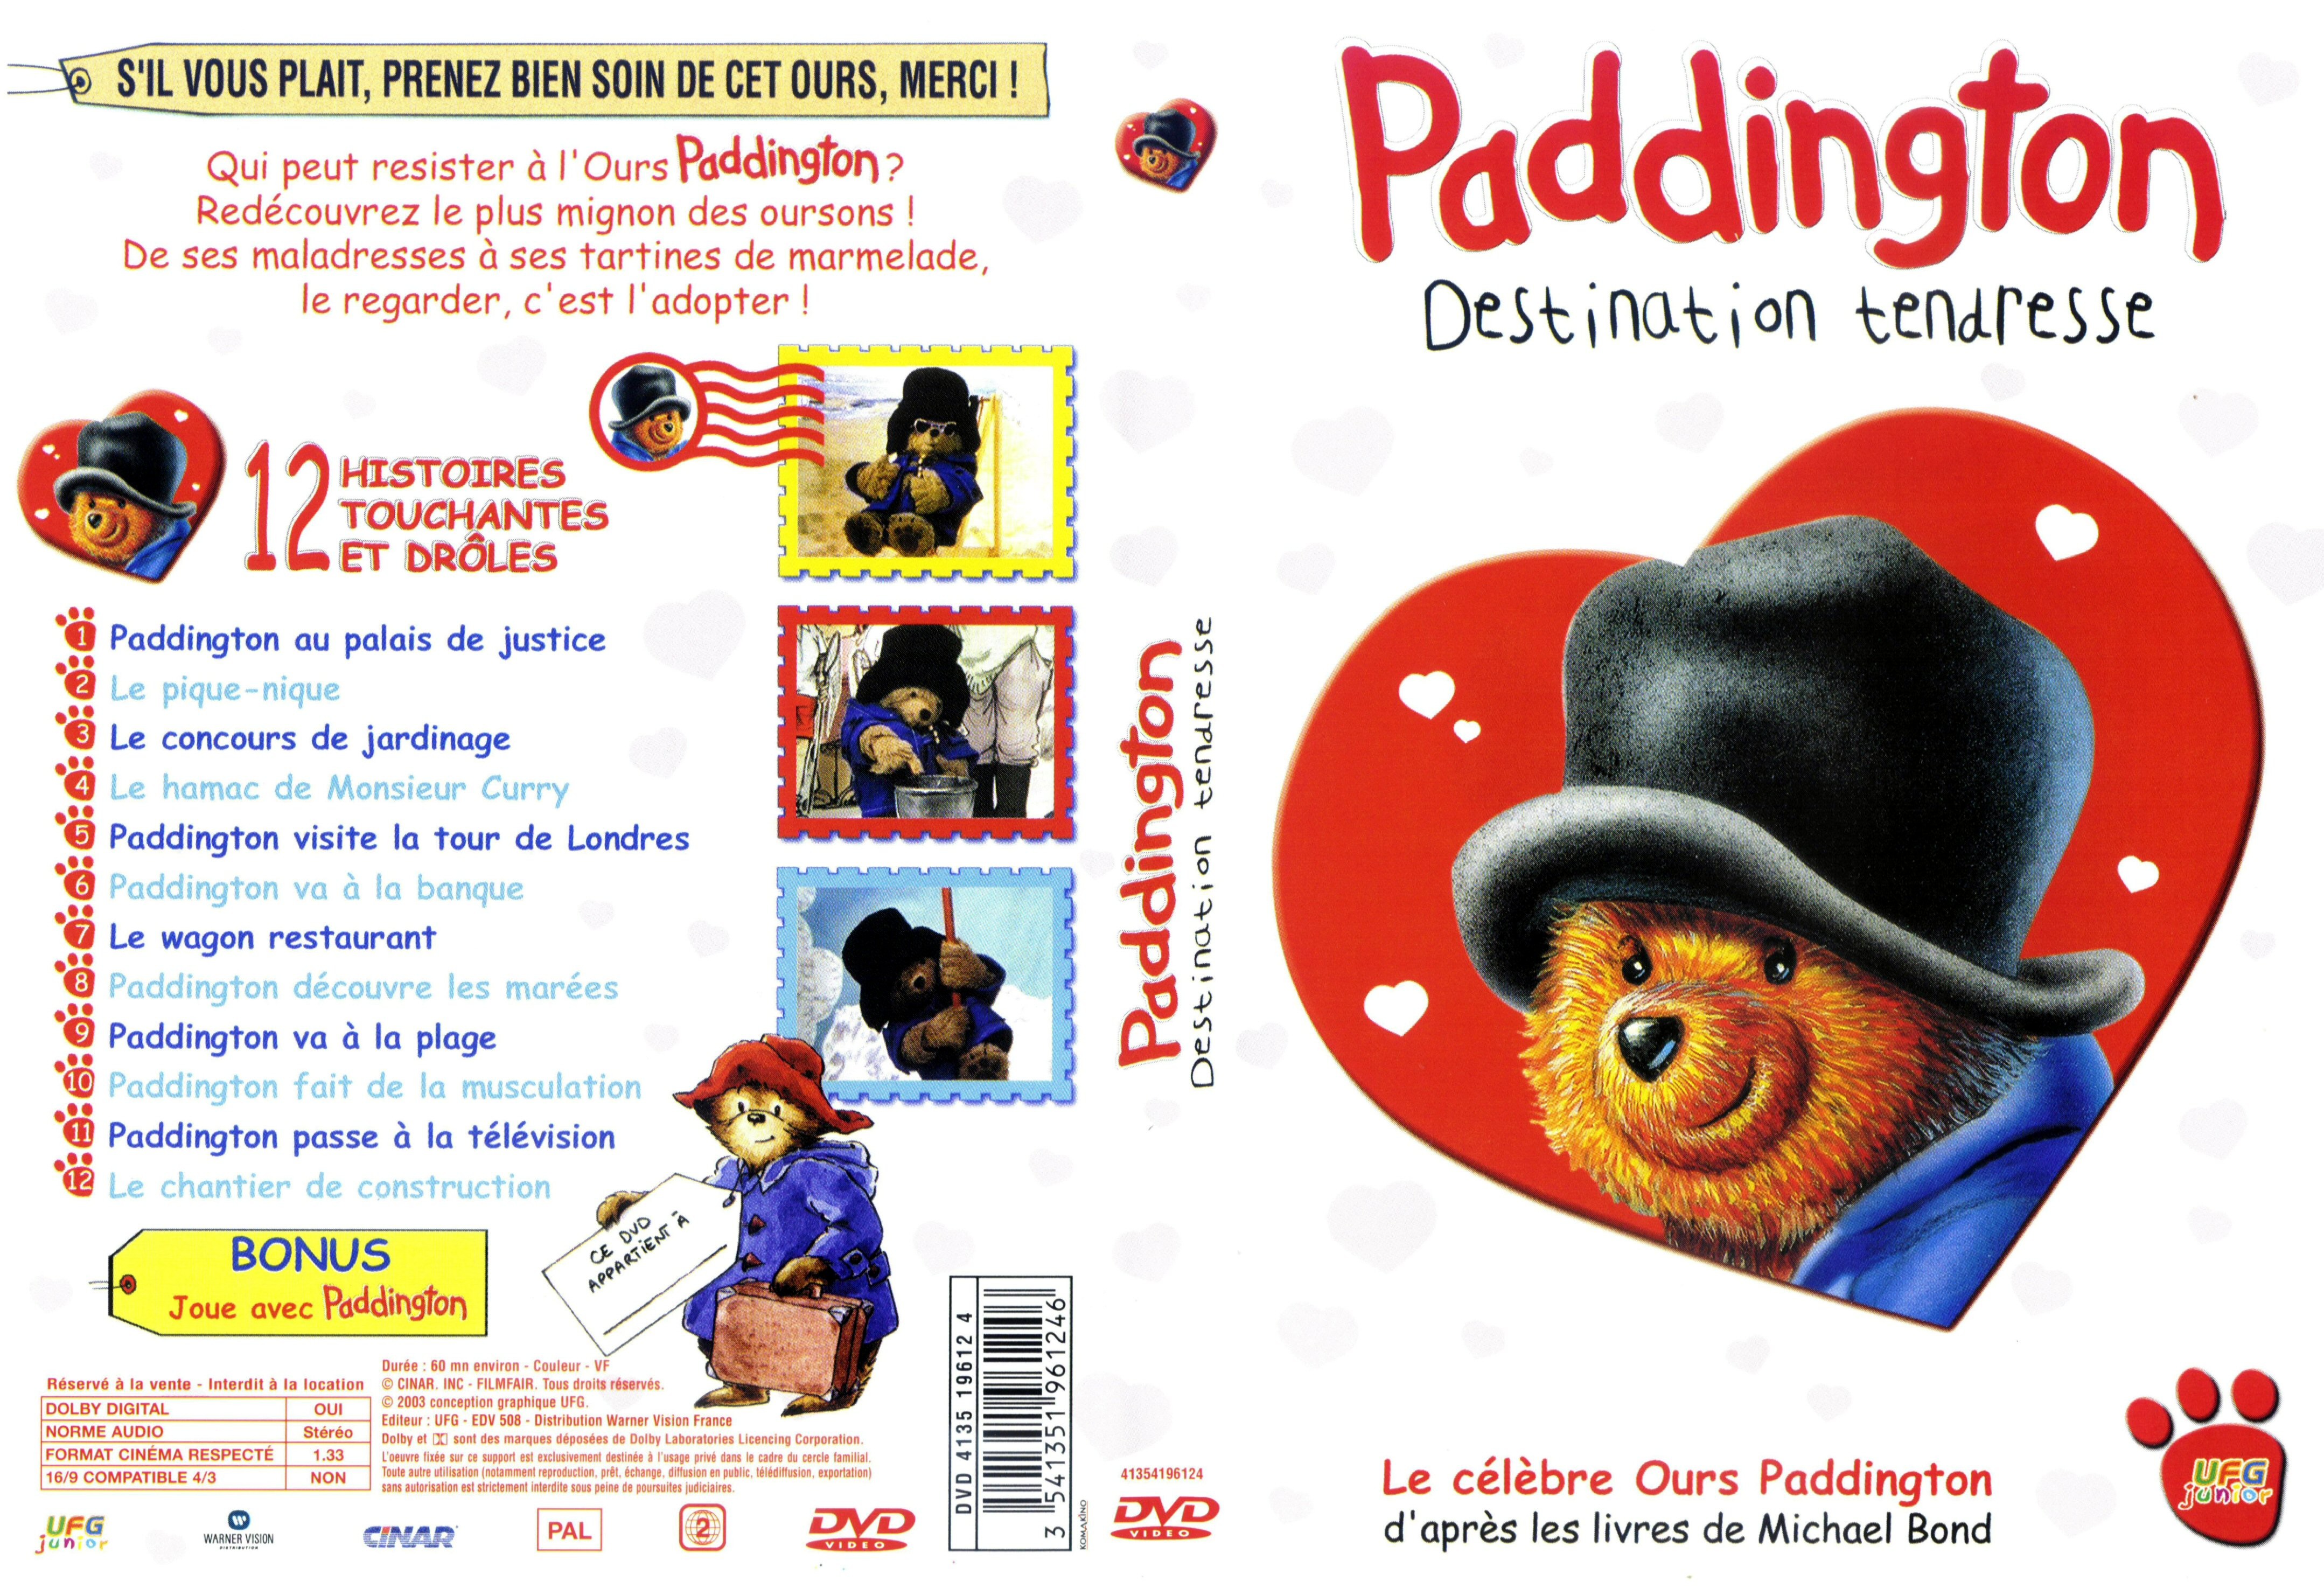 Jaquette DVD Paddington - Destination tendresse